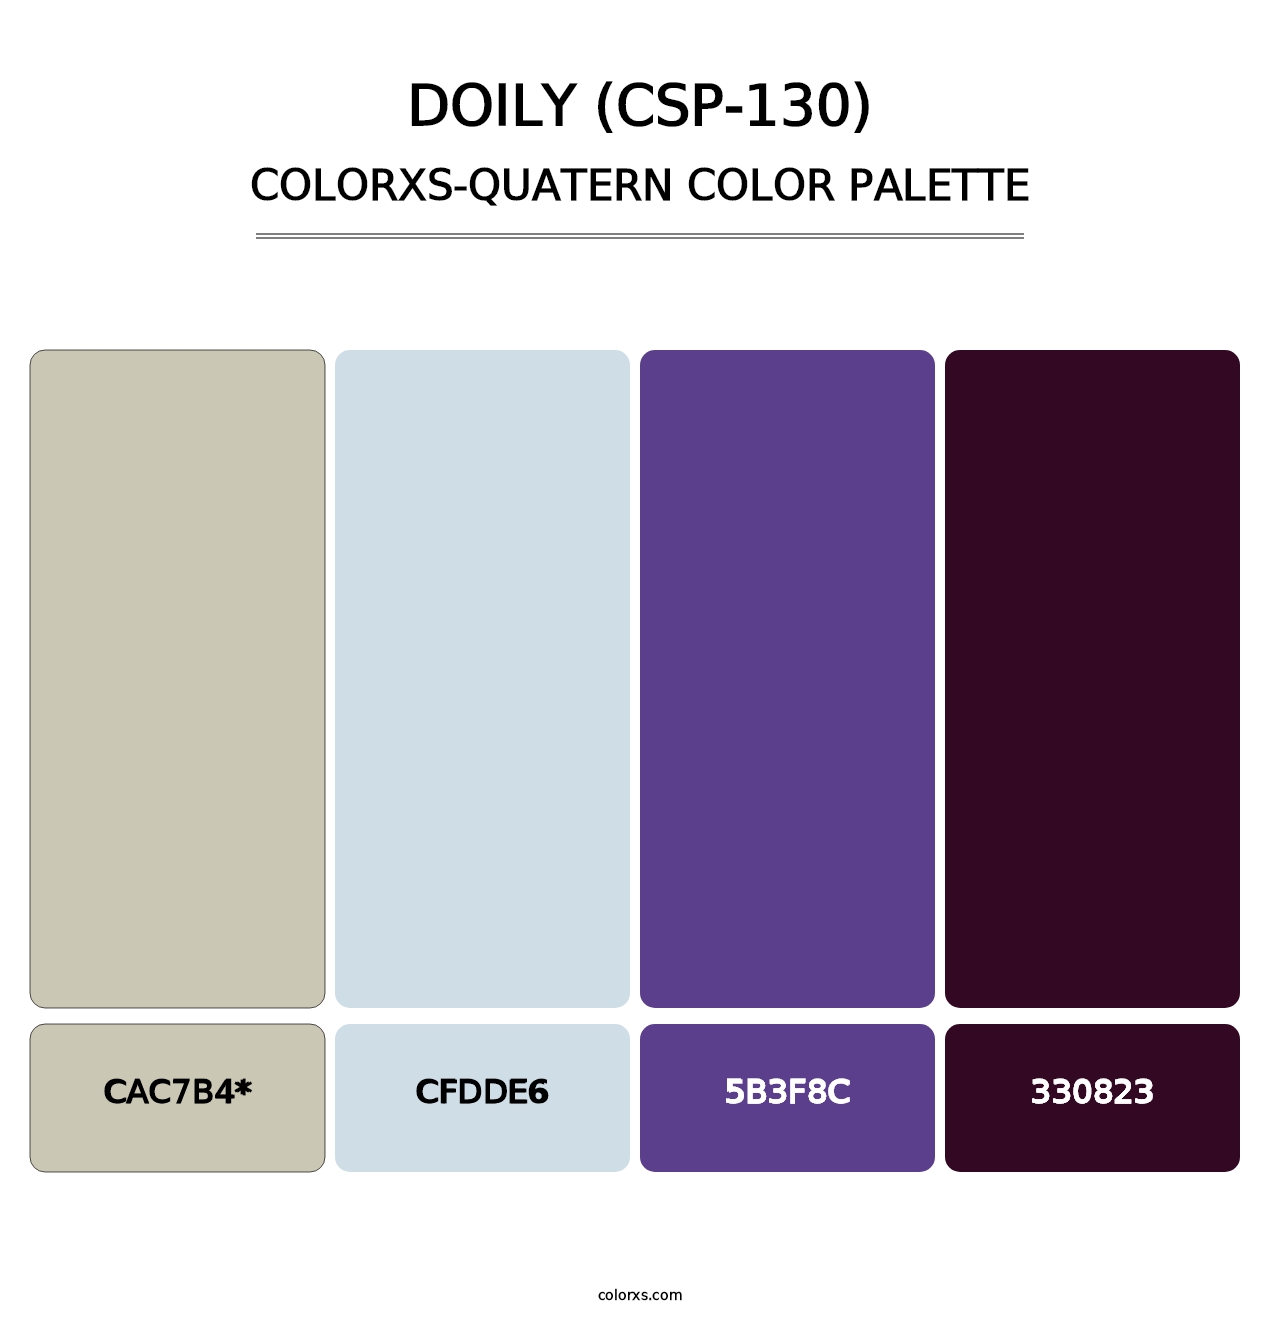 Doily (CSP-130) - Colorxs Quatern Palette